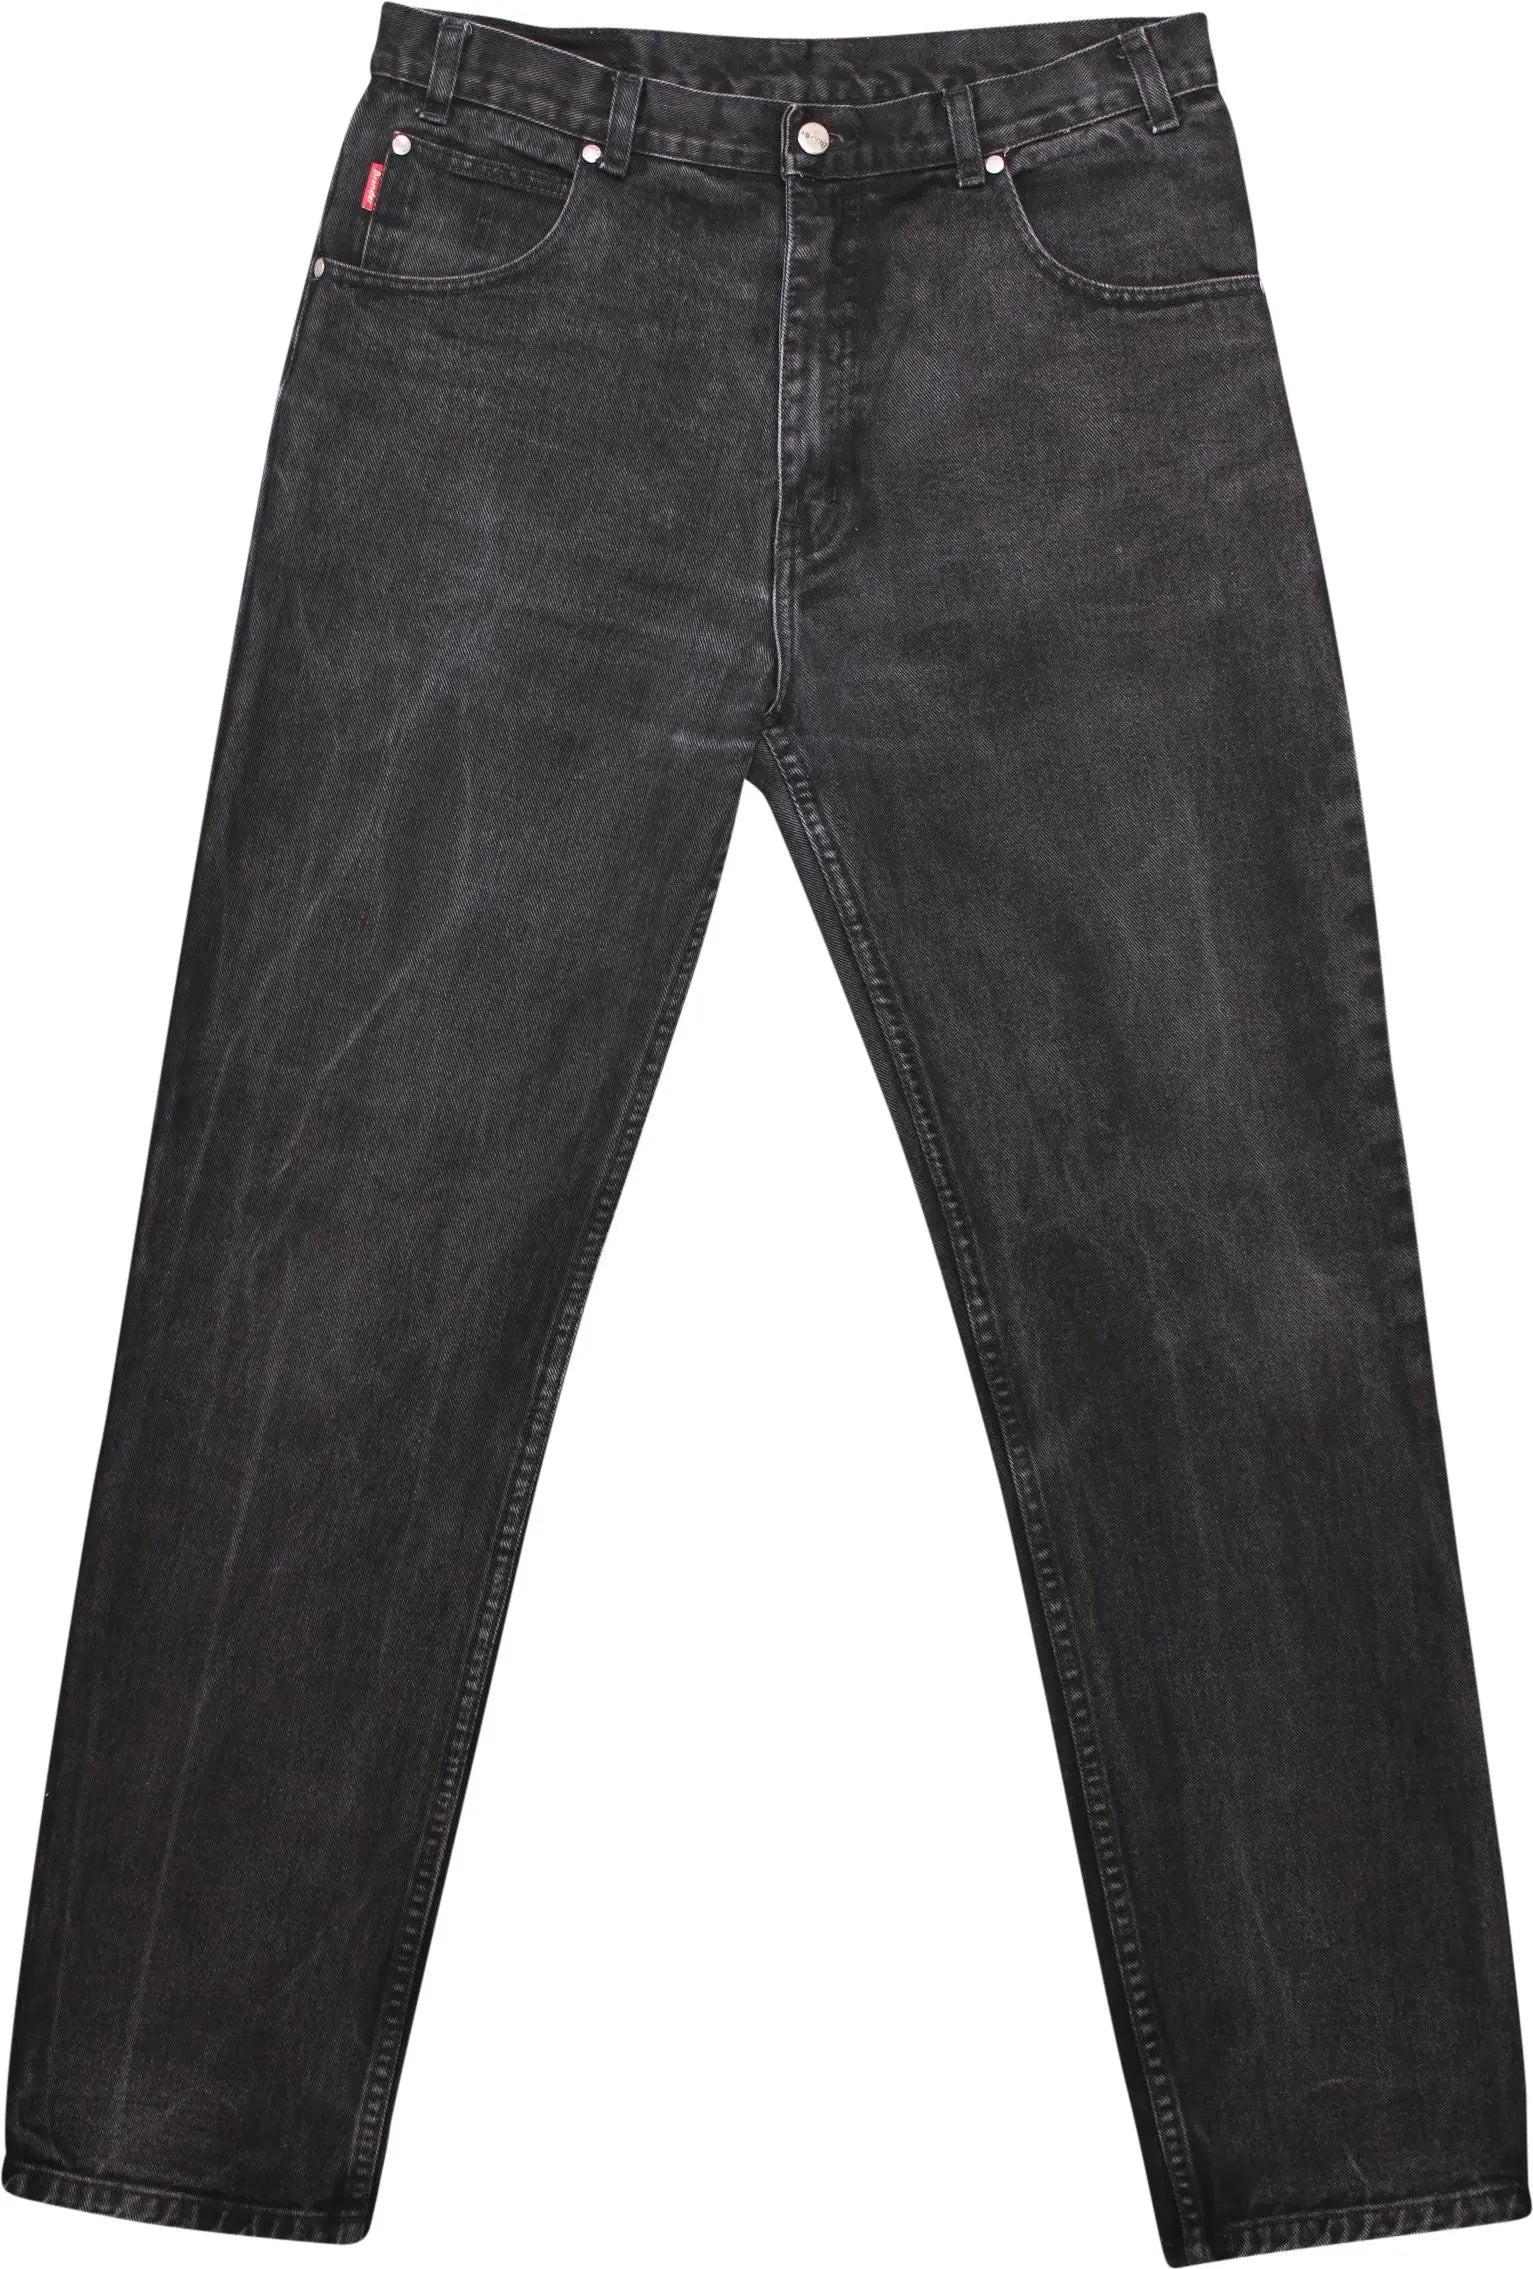 Brander - Brander Jeans- ThriftTale.com - Vintage and second handclothing